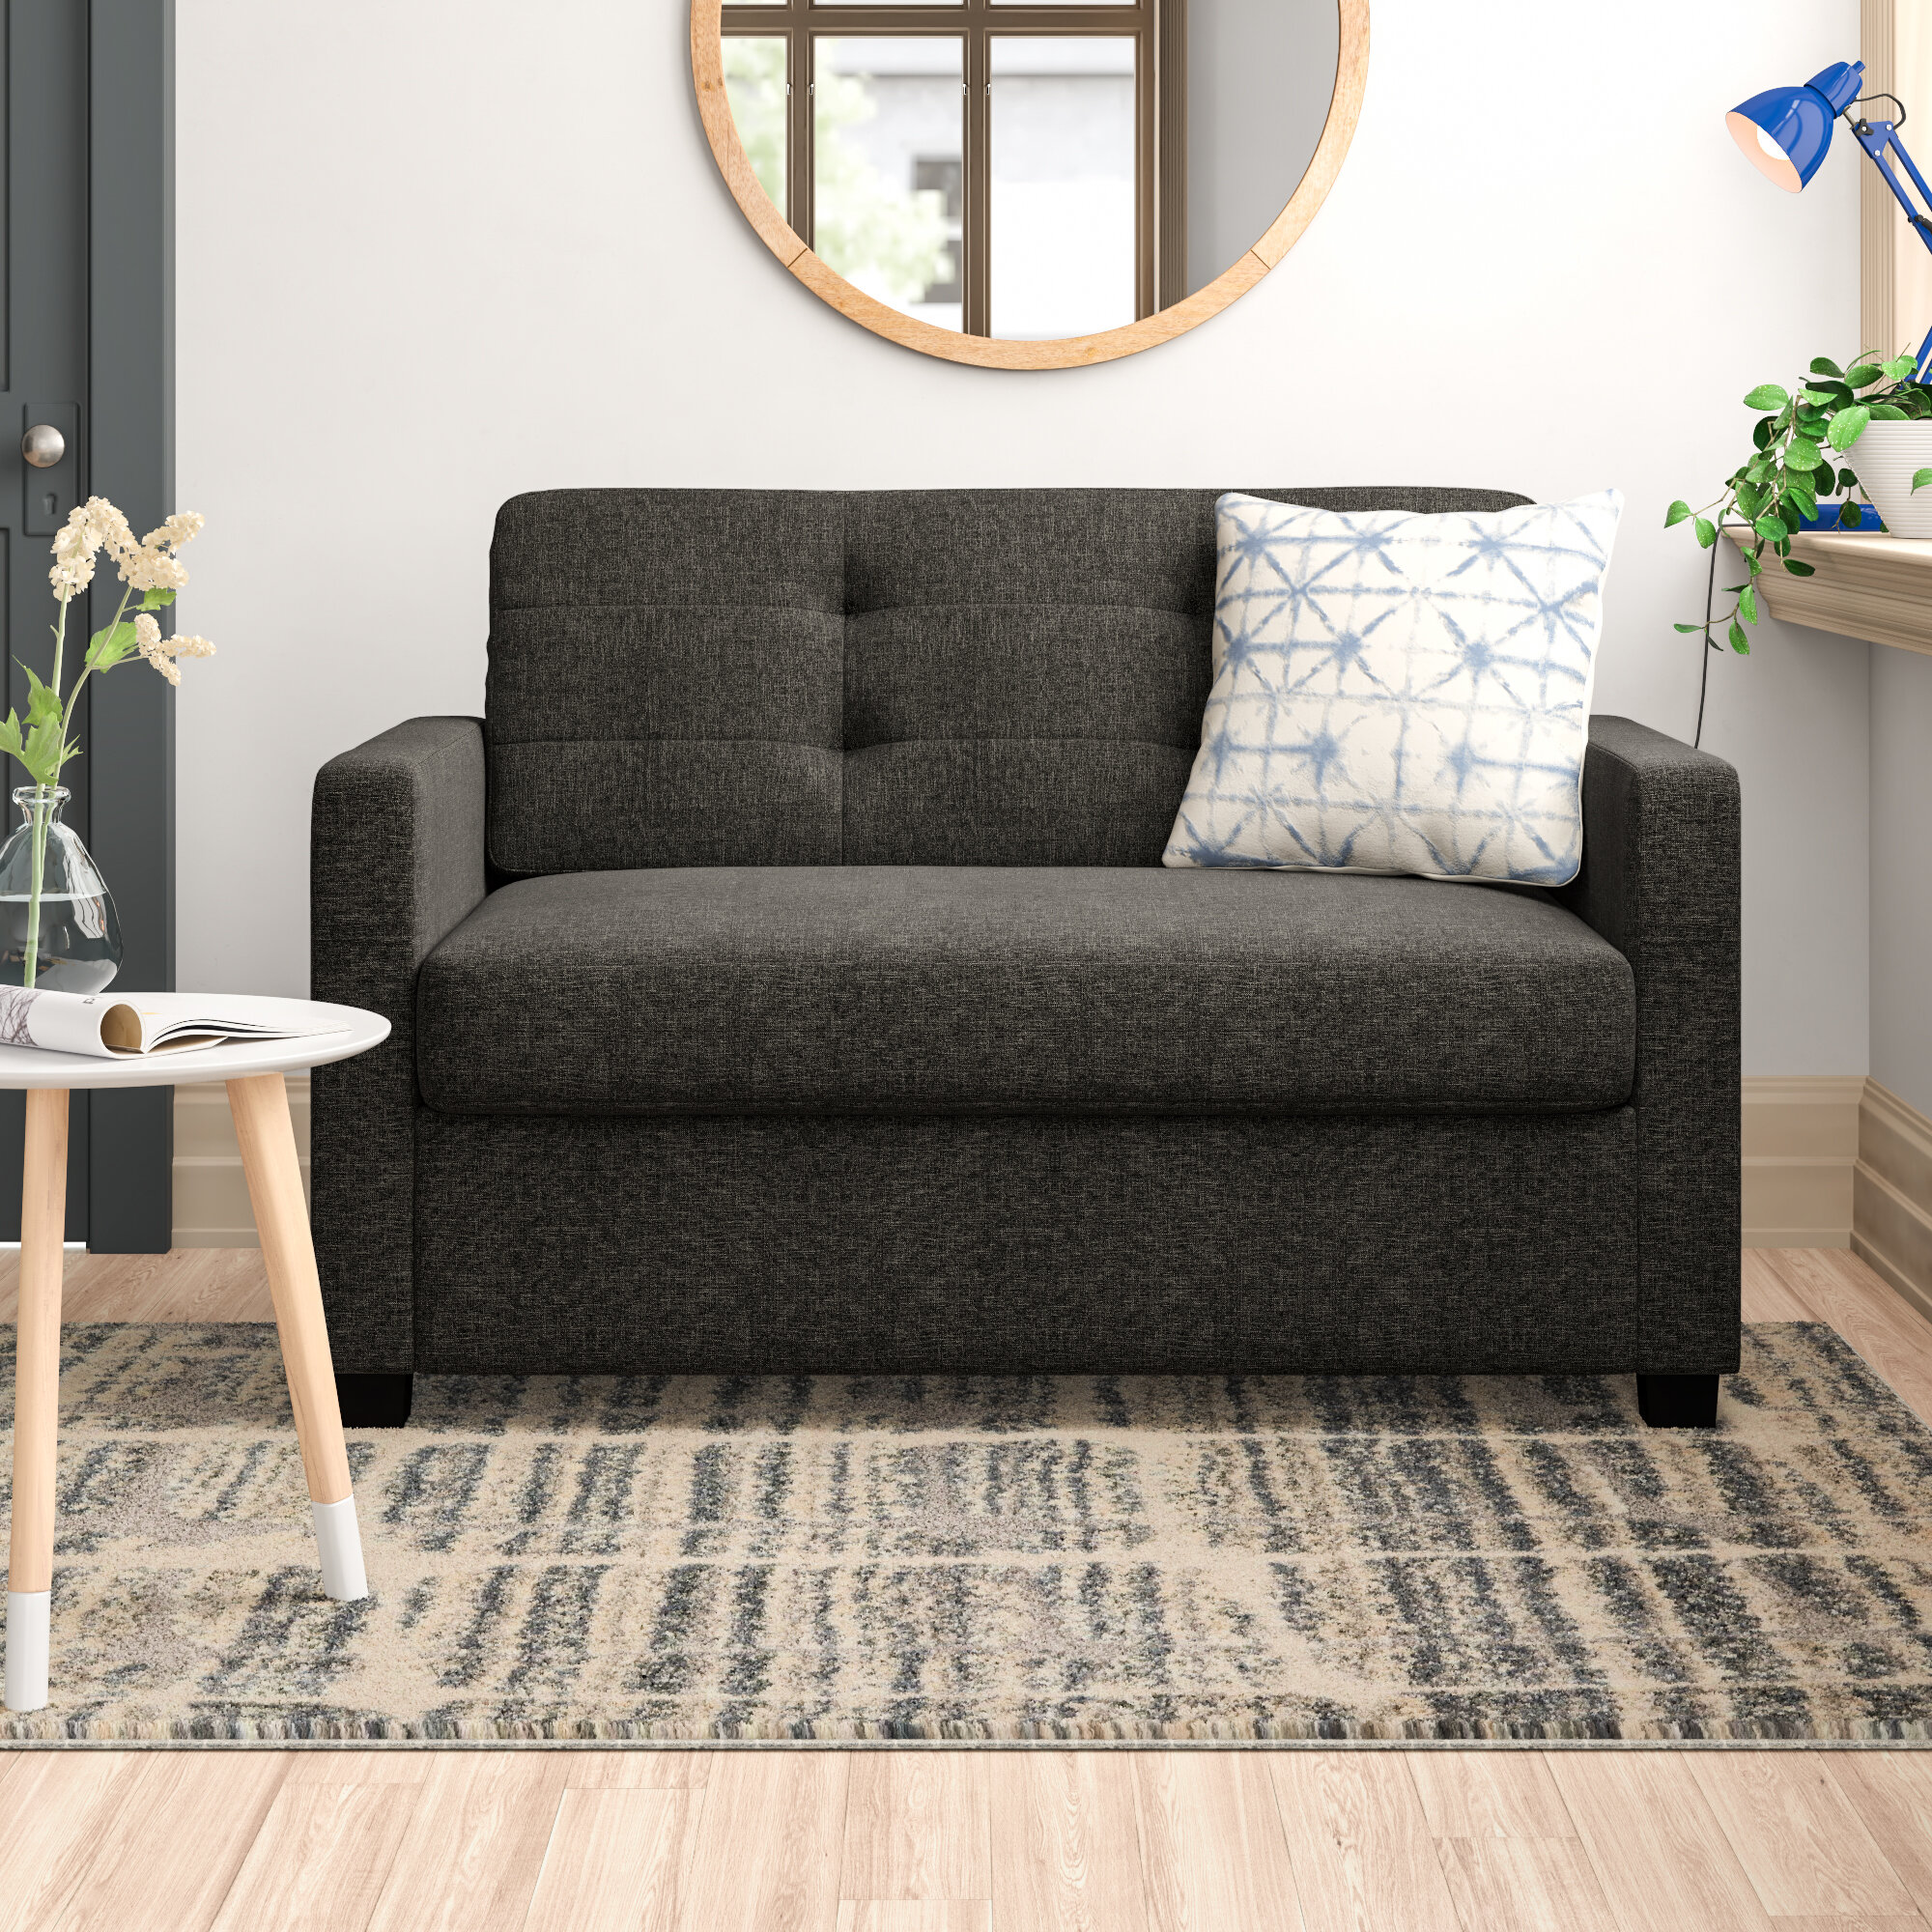 Zipcode Design Jovita Sleeper Sofa / Best Wayfair S Sofa